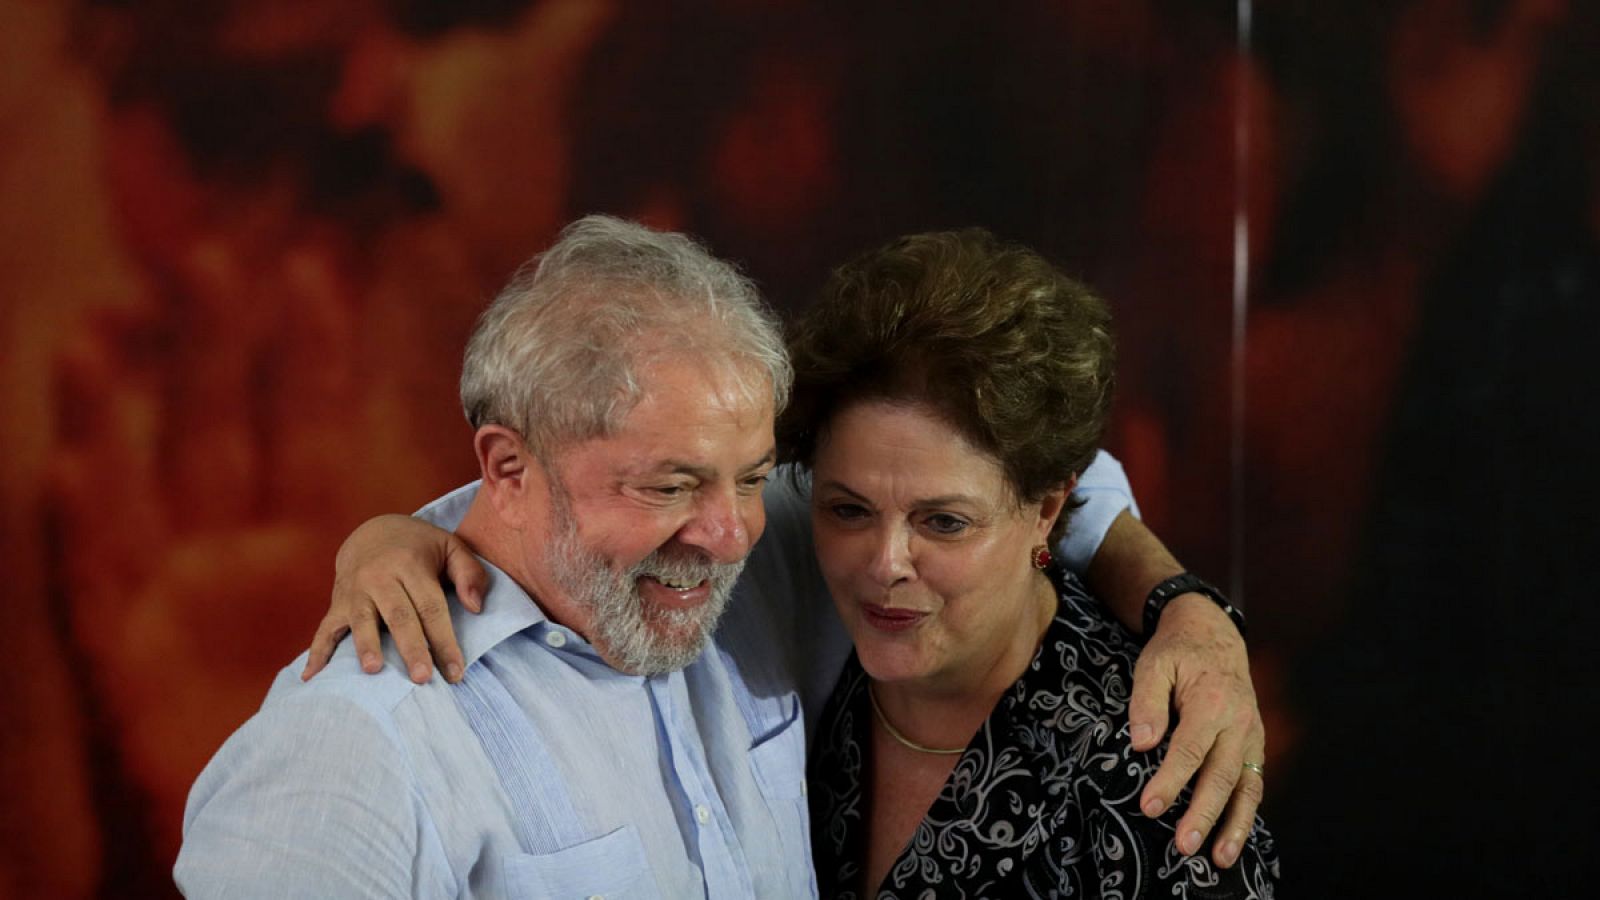 El ex presidente brasileño Luiz Inácio Lula da Silva (i) abrazando a la también exmandataria Dilma Rousseff el 25 de enero de 2018 durante una reunión en Sao Paulo (Brasil).